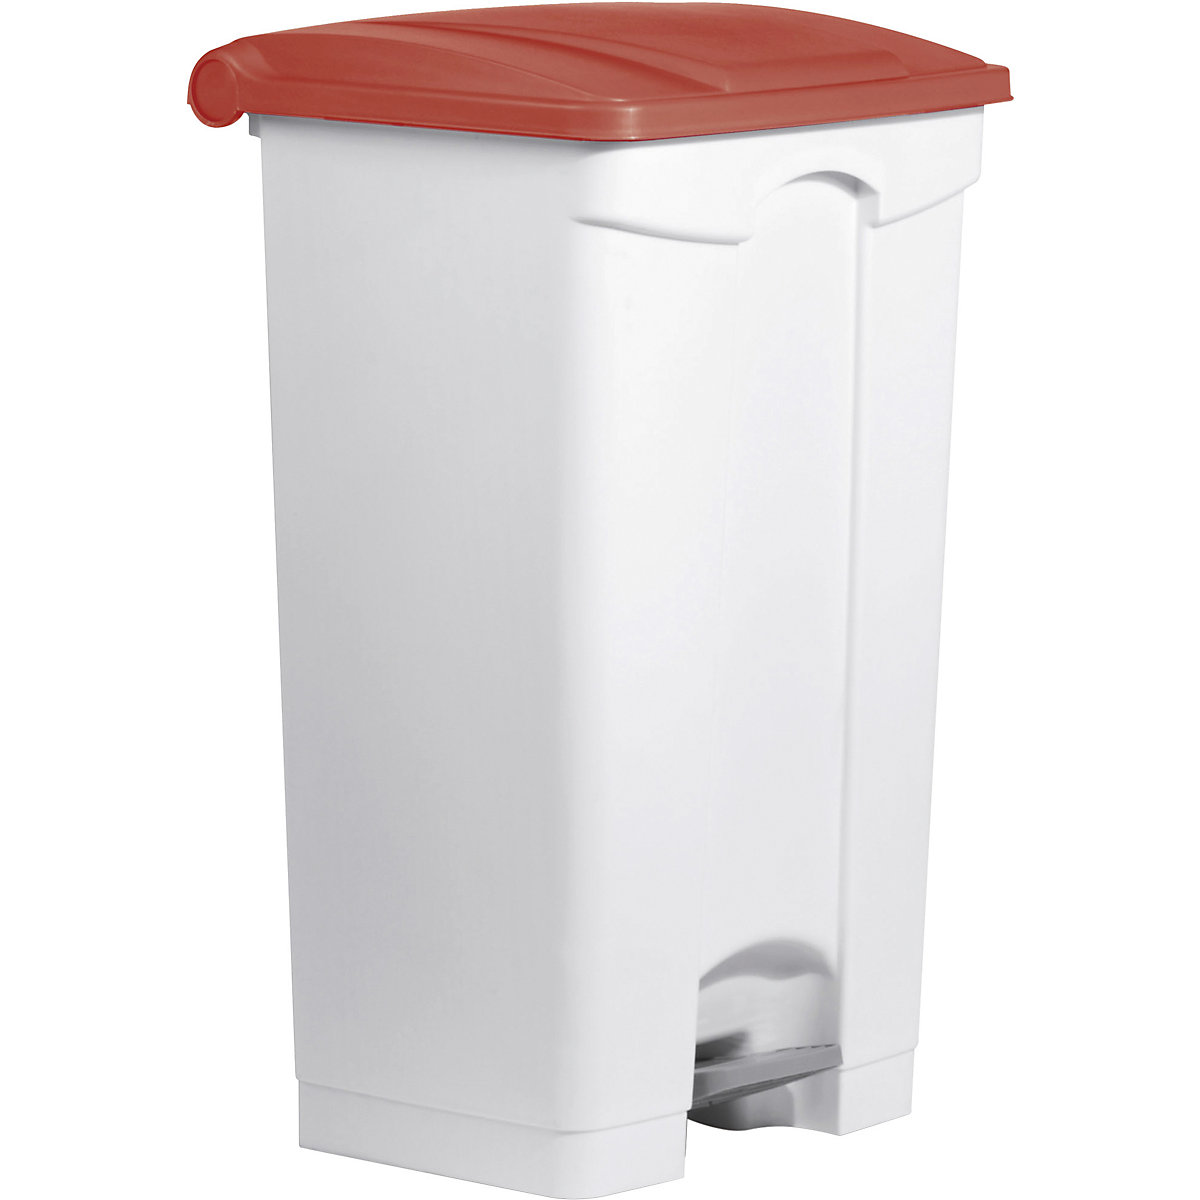 Spremnik za otpad s papučicom – helit, volumen 90 l, ŠxVxD 500 x 830 x 410 mm, u bijeloj boji, poklopac u crvenoj boji-6